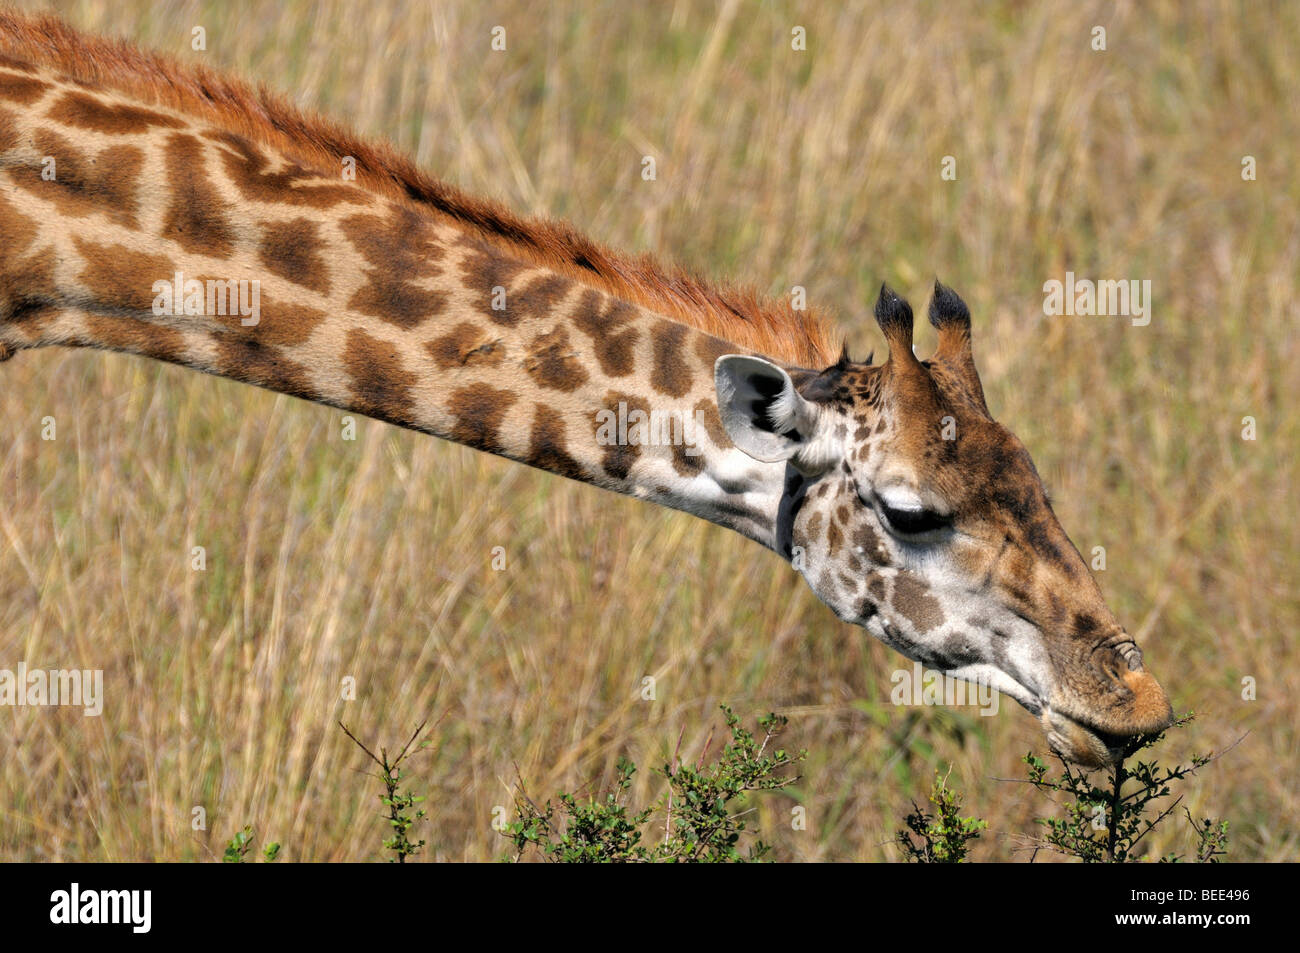 Les Masais Girafe (Giraffa camelopardalis tippelskirchi), portrait, la Réserve Naturelle de Masai Mara, Kenya, Afrique de l'Est Banque D'Images